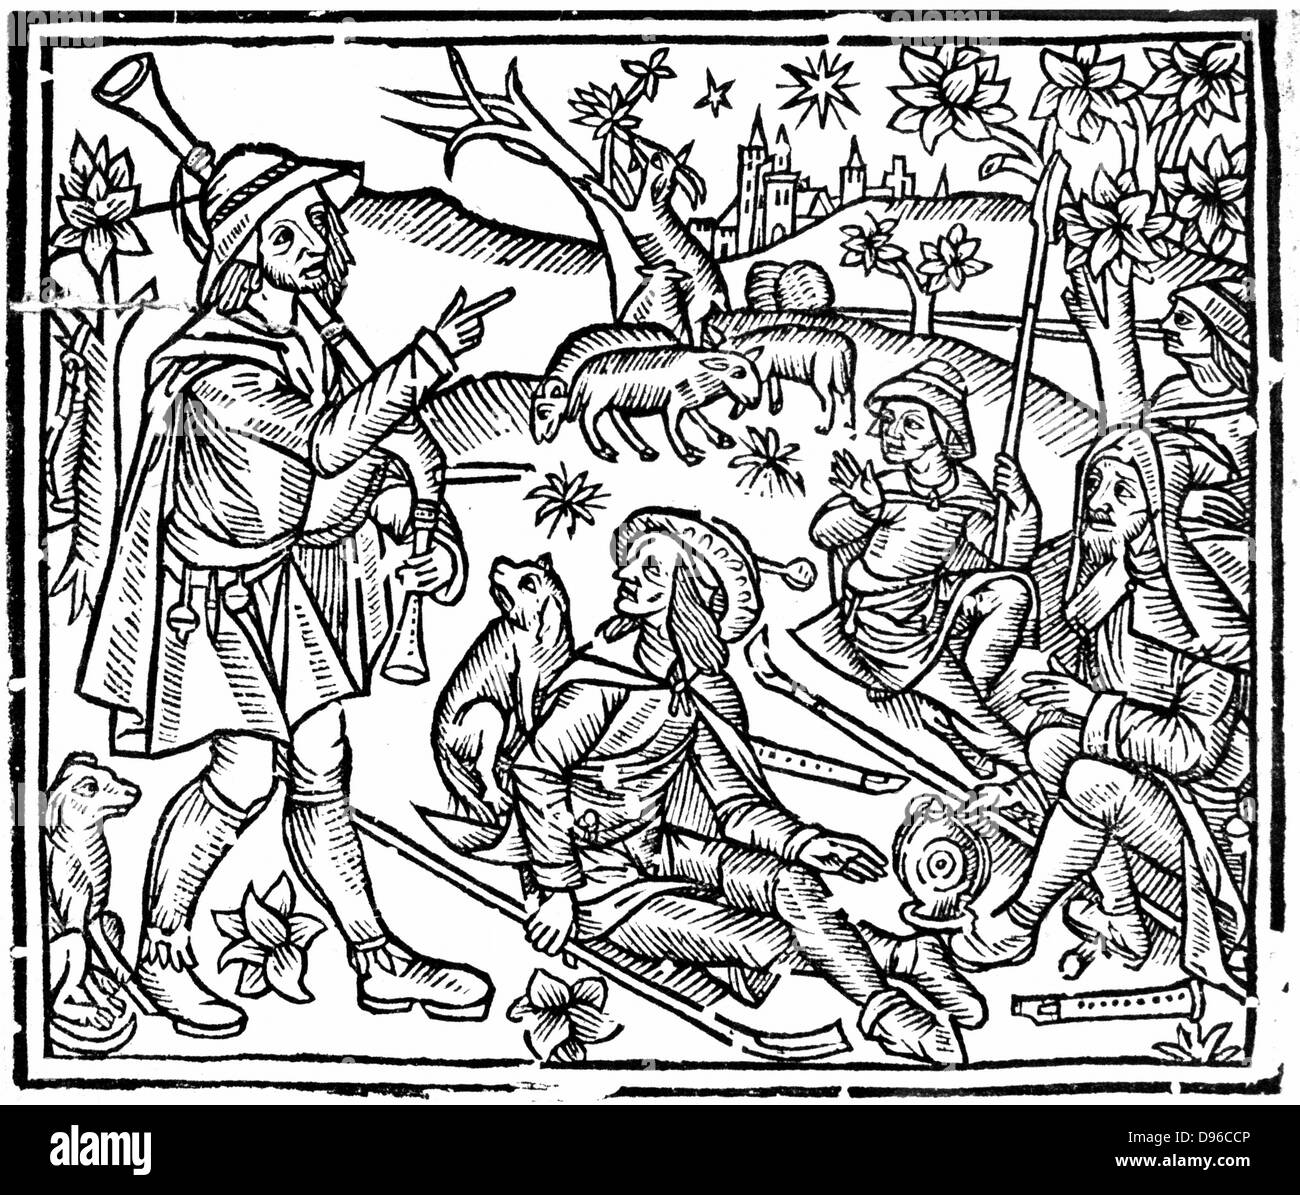 Hirten mit ihren Schafen und Hunden. Abbildung auf der linken Seite ist der Dudelsack und gedrückt halten, sowie als Gauner für das Handling der Schafe, es gibt Holzblasinstrumente auf dem Boden. Von Anfang des 16. Jahrhunderts Englische Ausgabe von "Die Shepheards Kalendar" Holzschnitt. Stockfoto